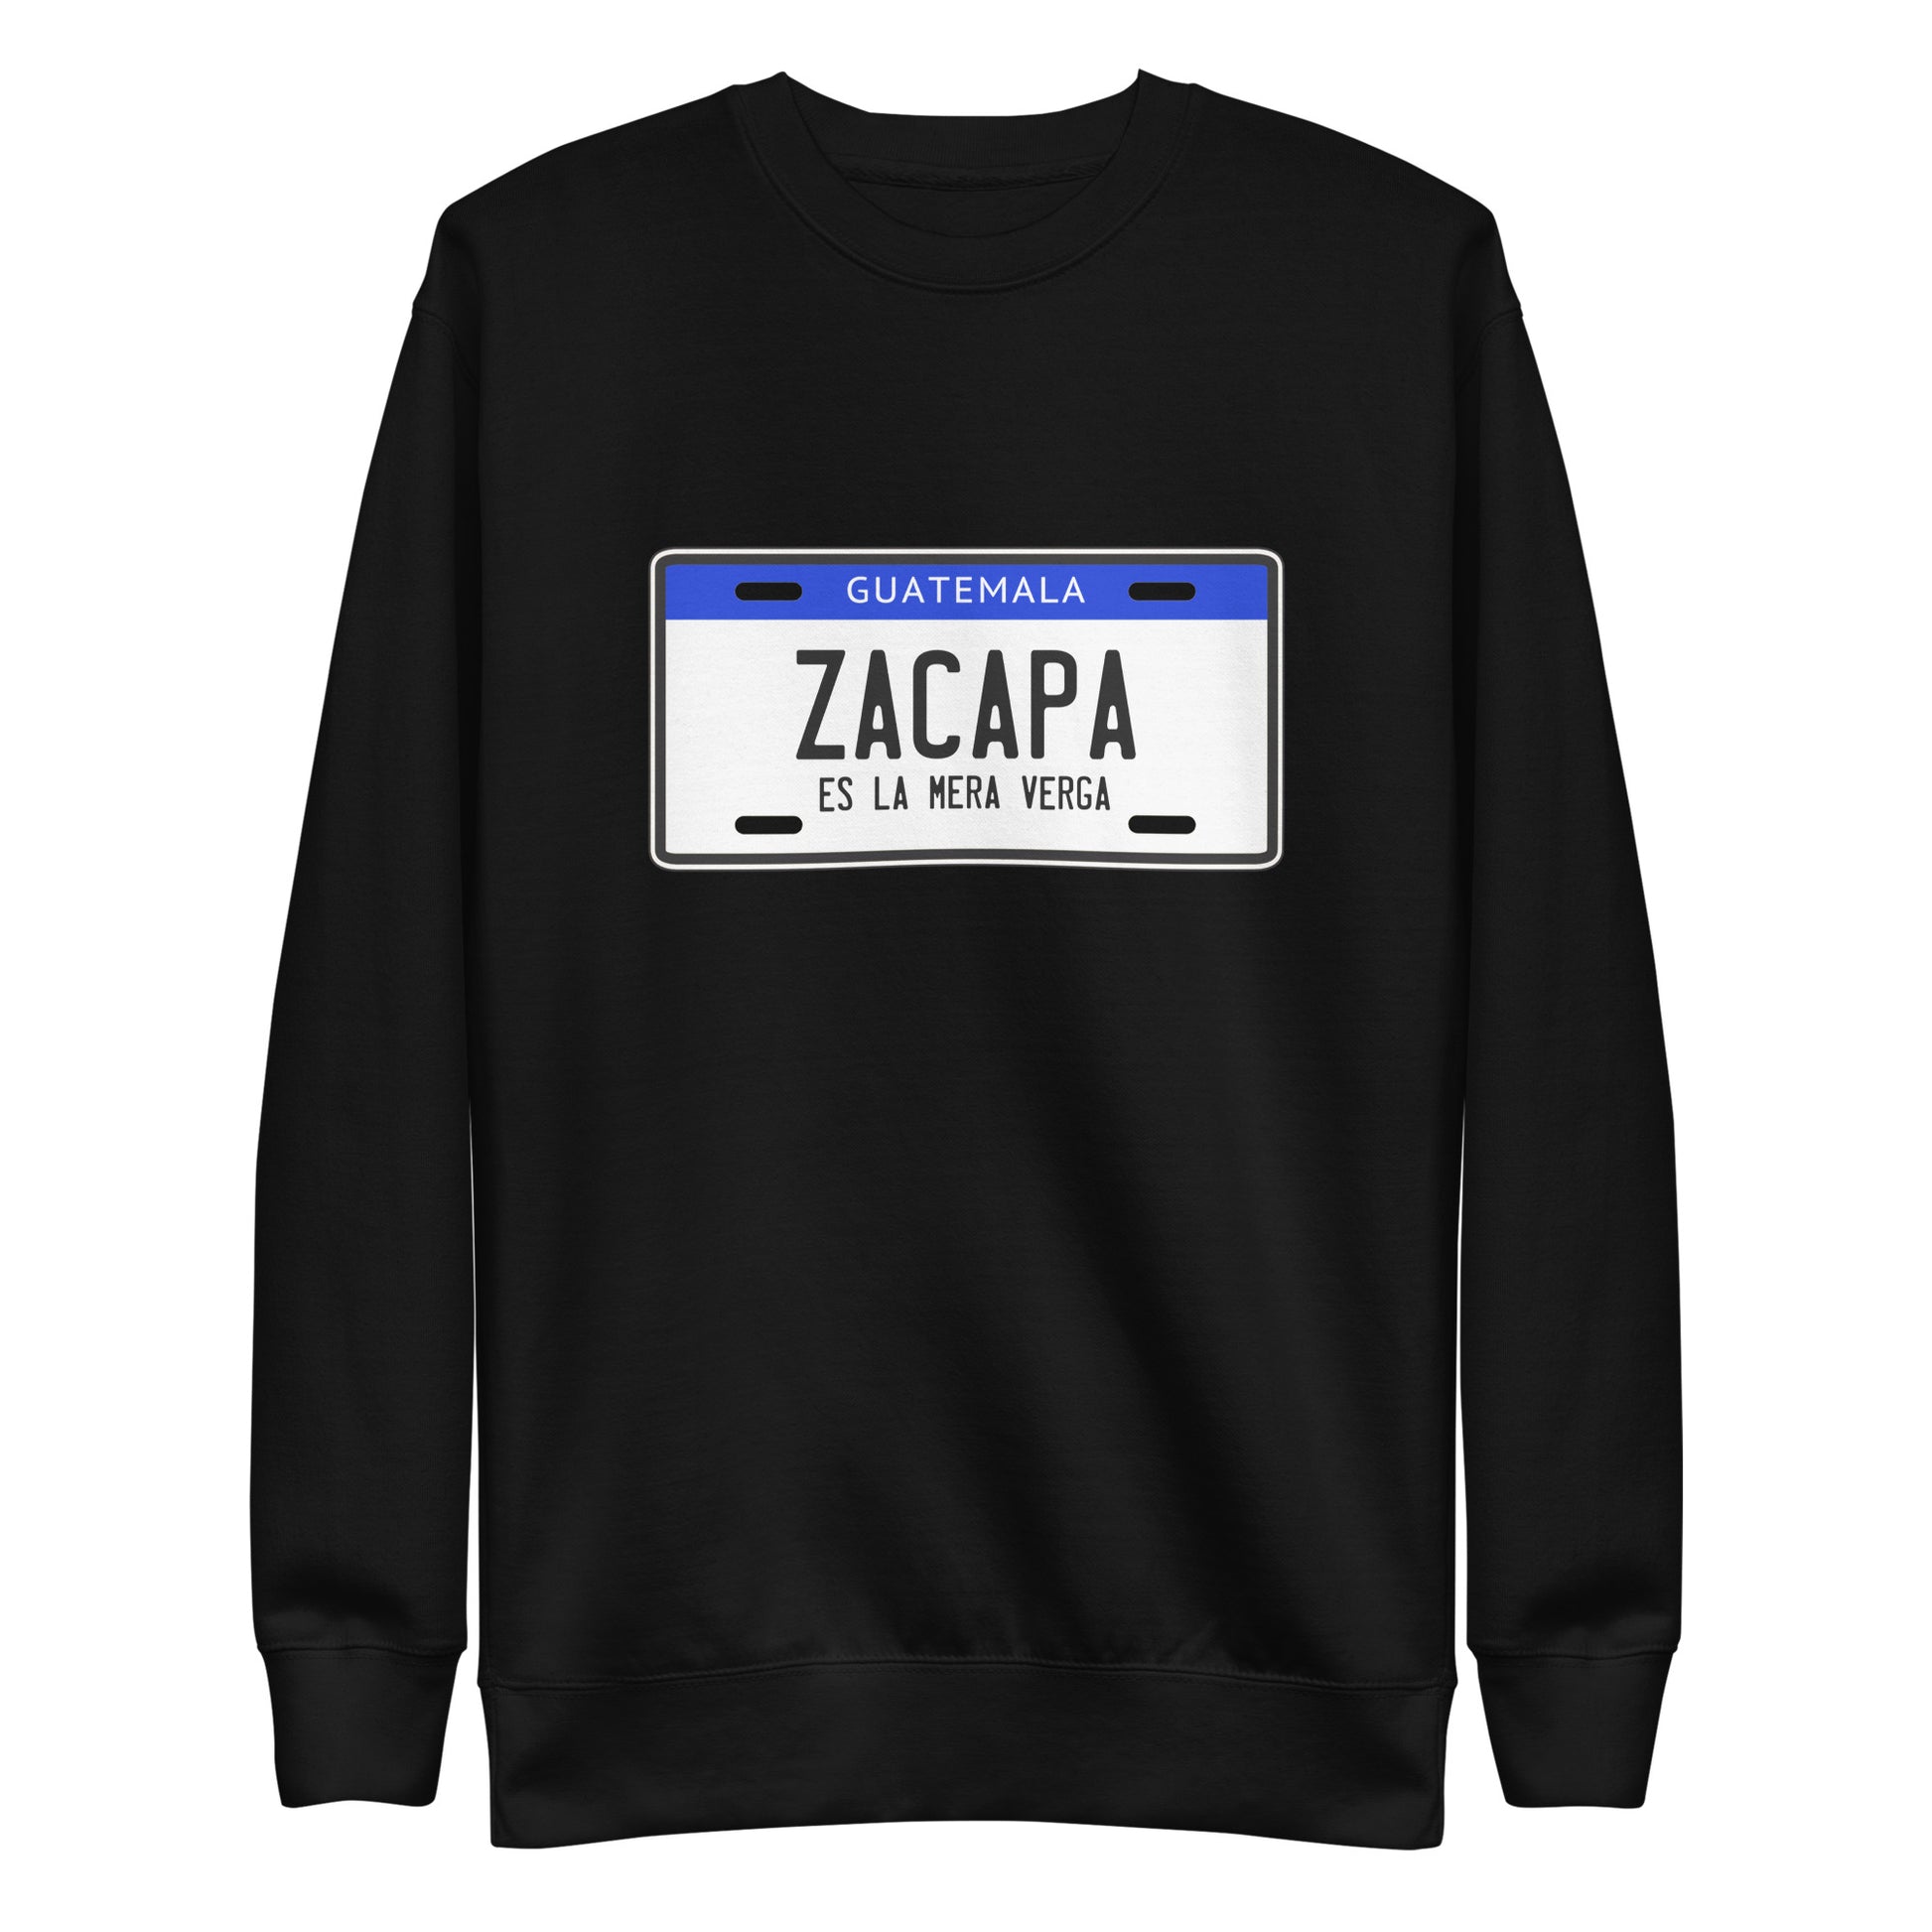 Suéter de Zacapa es la mera V... ,Descubre calidad excepcional y estampados duraderos. Encuentra estilo y orgullo en cada prenda. Compra ahora!